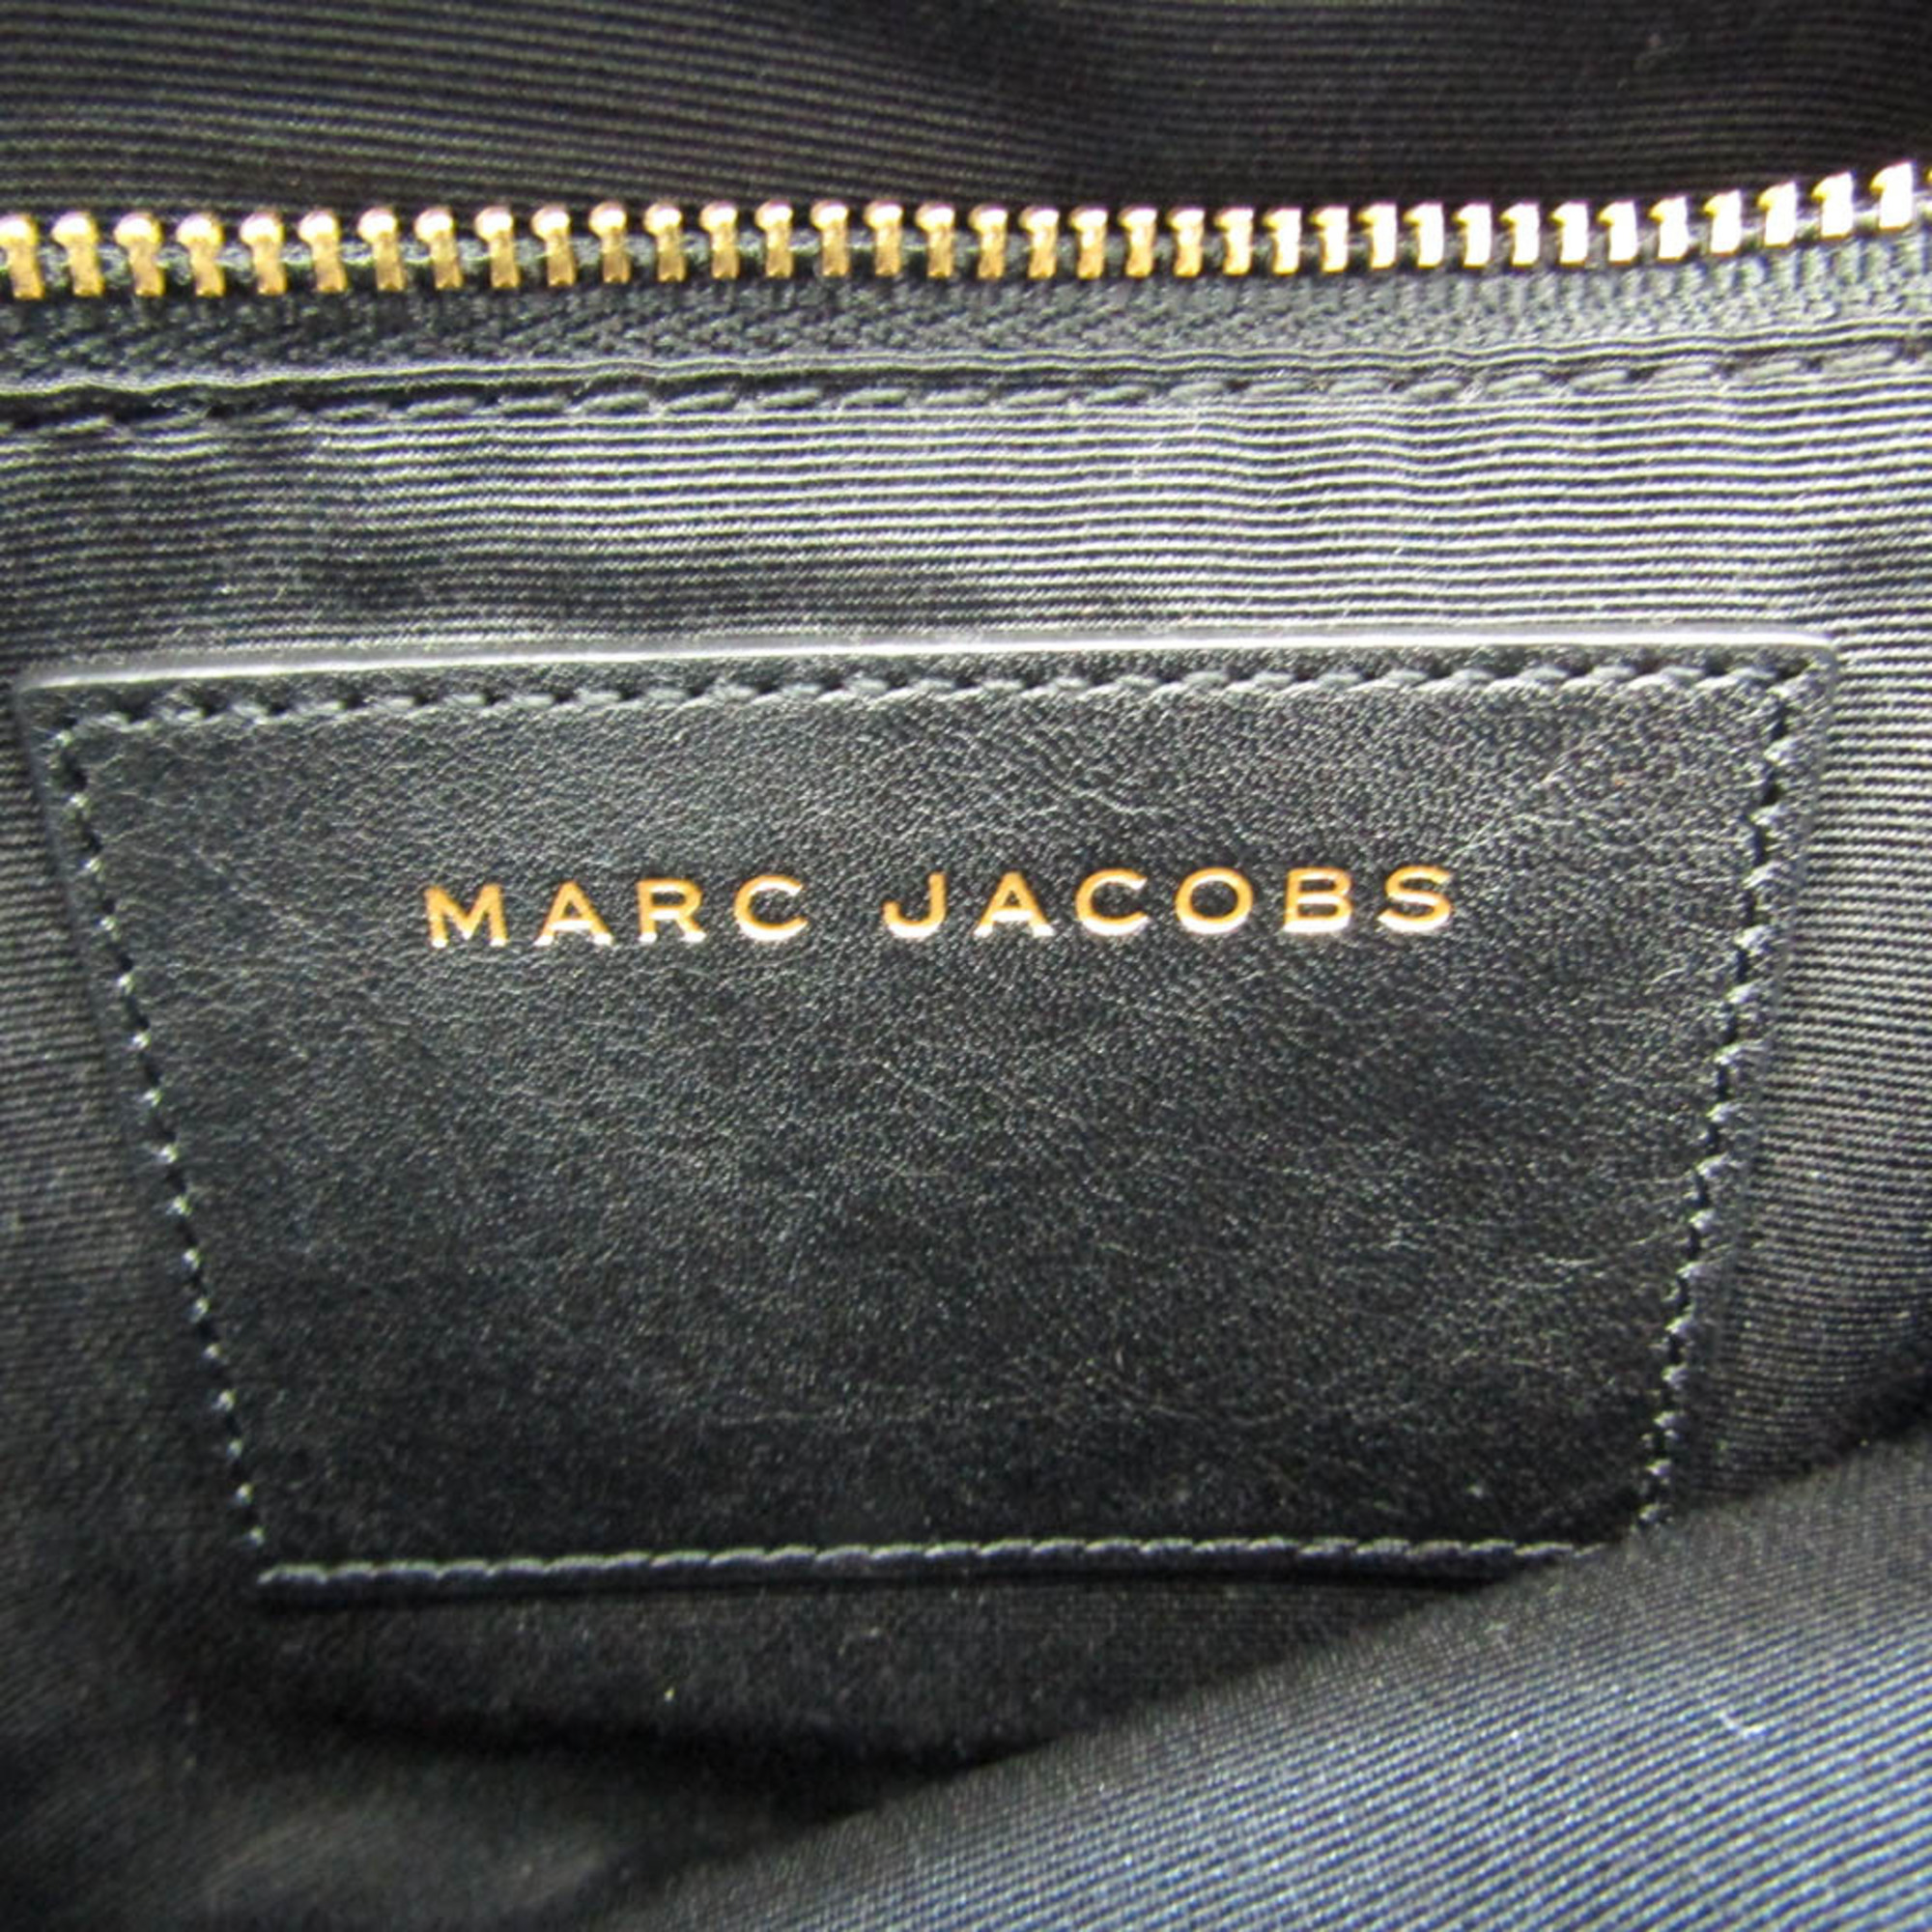 マーク・ジェイコブス(Marc Jacobs) KIKI M0010258 レディース レザー ショルダーバッグ ブラック